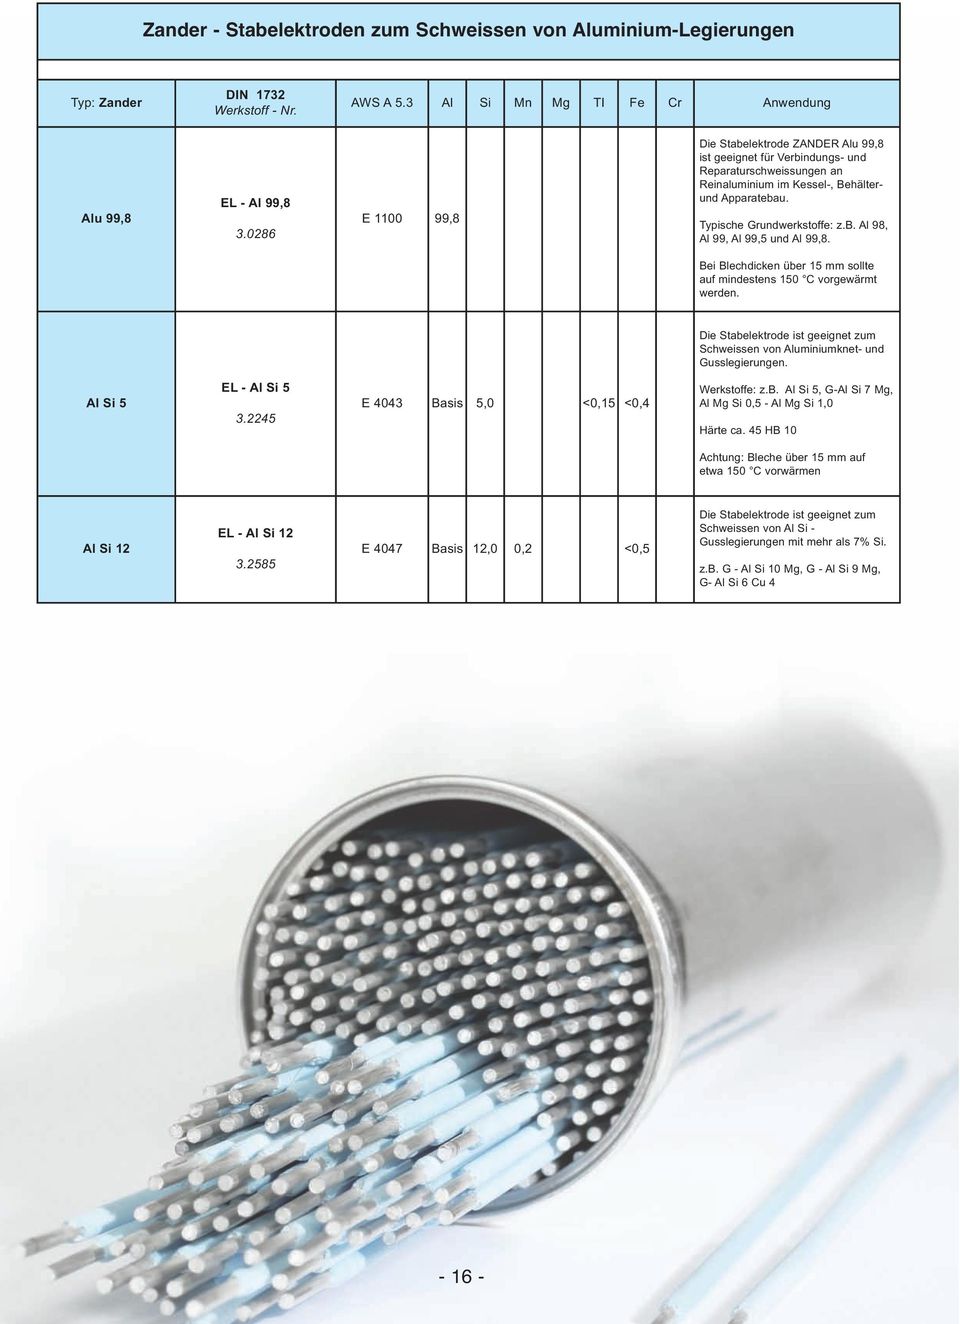 Bei Blechdicken über 15 mm sollte auf mindestens 150 C vorgewärmt werden. Die Stabelektrode ist geeignet zum Schweissen von Aluminiumknet- und Gusslegierungen. Al Si 5 EL - Al Si 5 3.